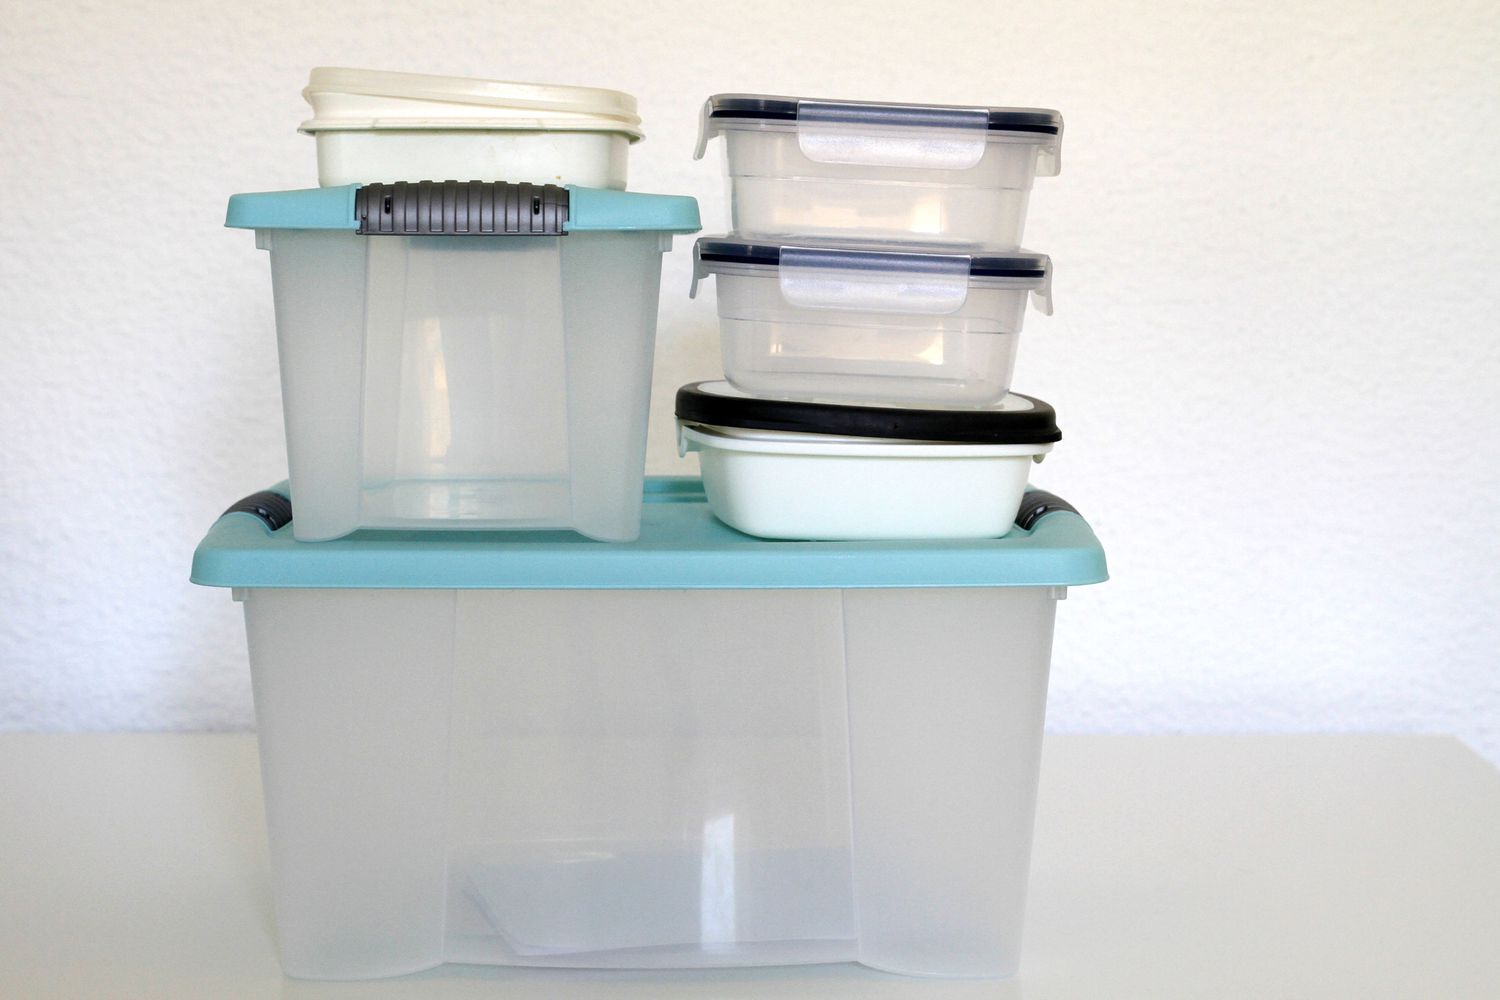 Cubos de plástico transparentes vacíos con tapa azul.